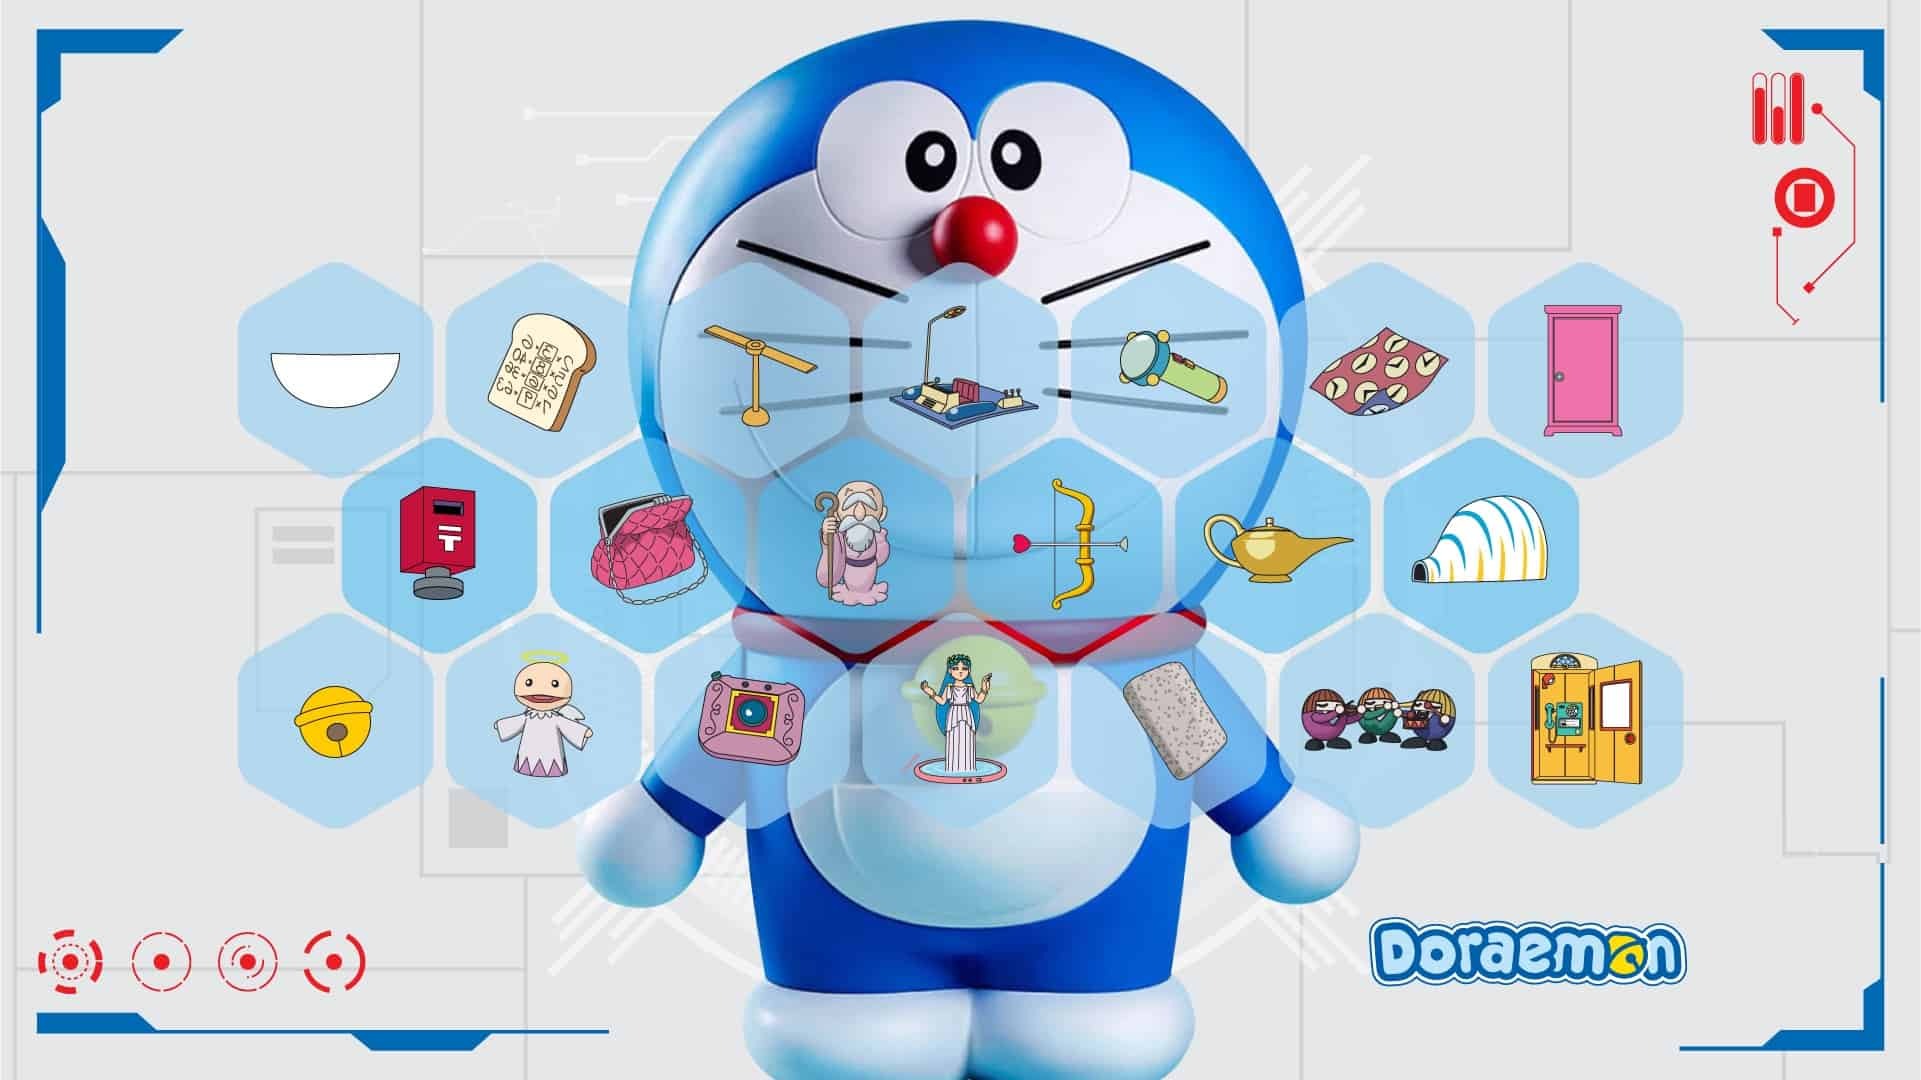 Đây là những bảo bối của Doraemon tưởng chỉ là viển vông nhưng đã thành sự thật